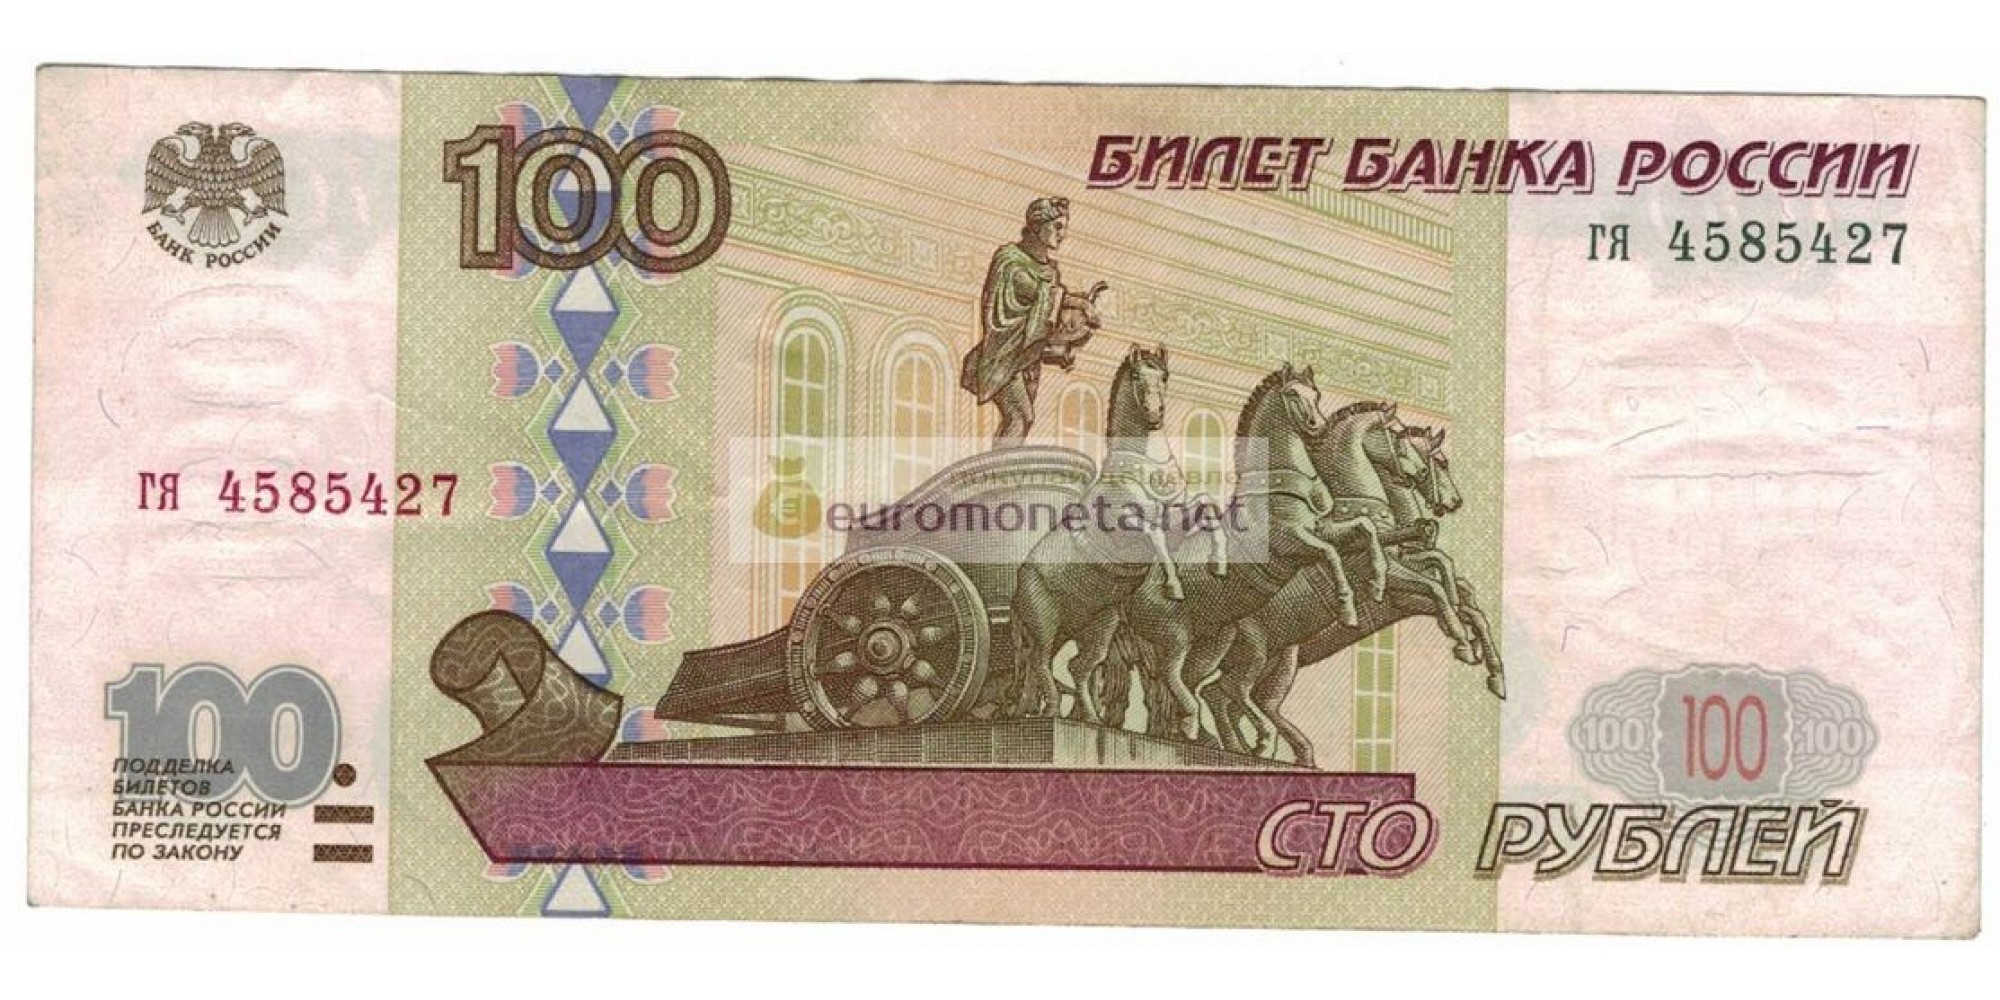 Россия 100 рублей 1997 год без модификации серия гя 4585427